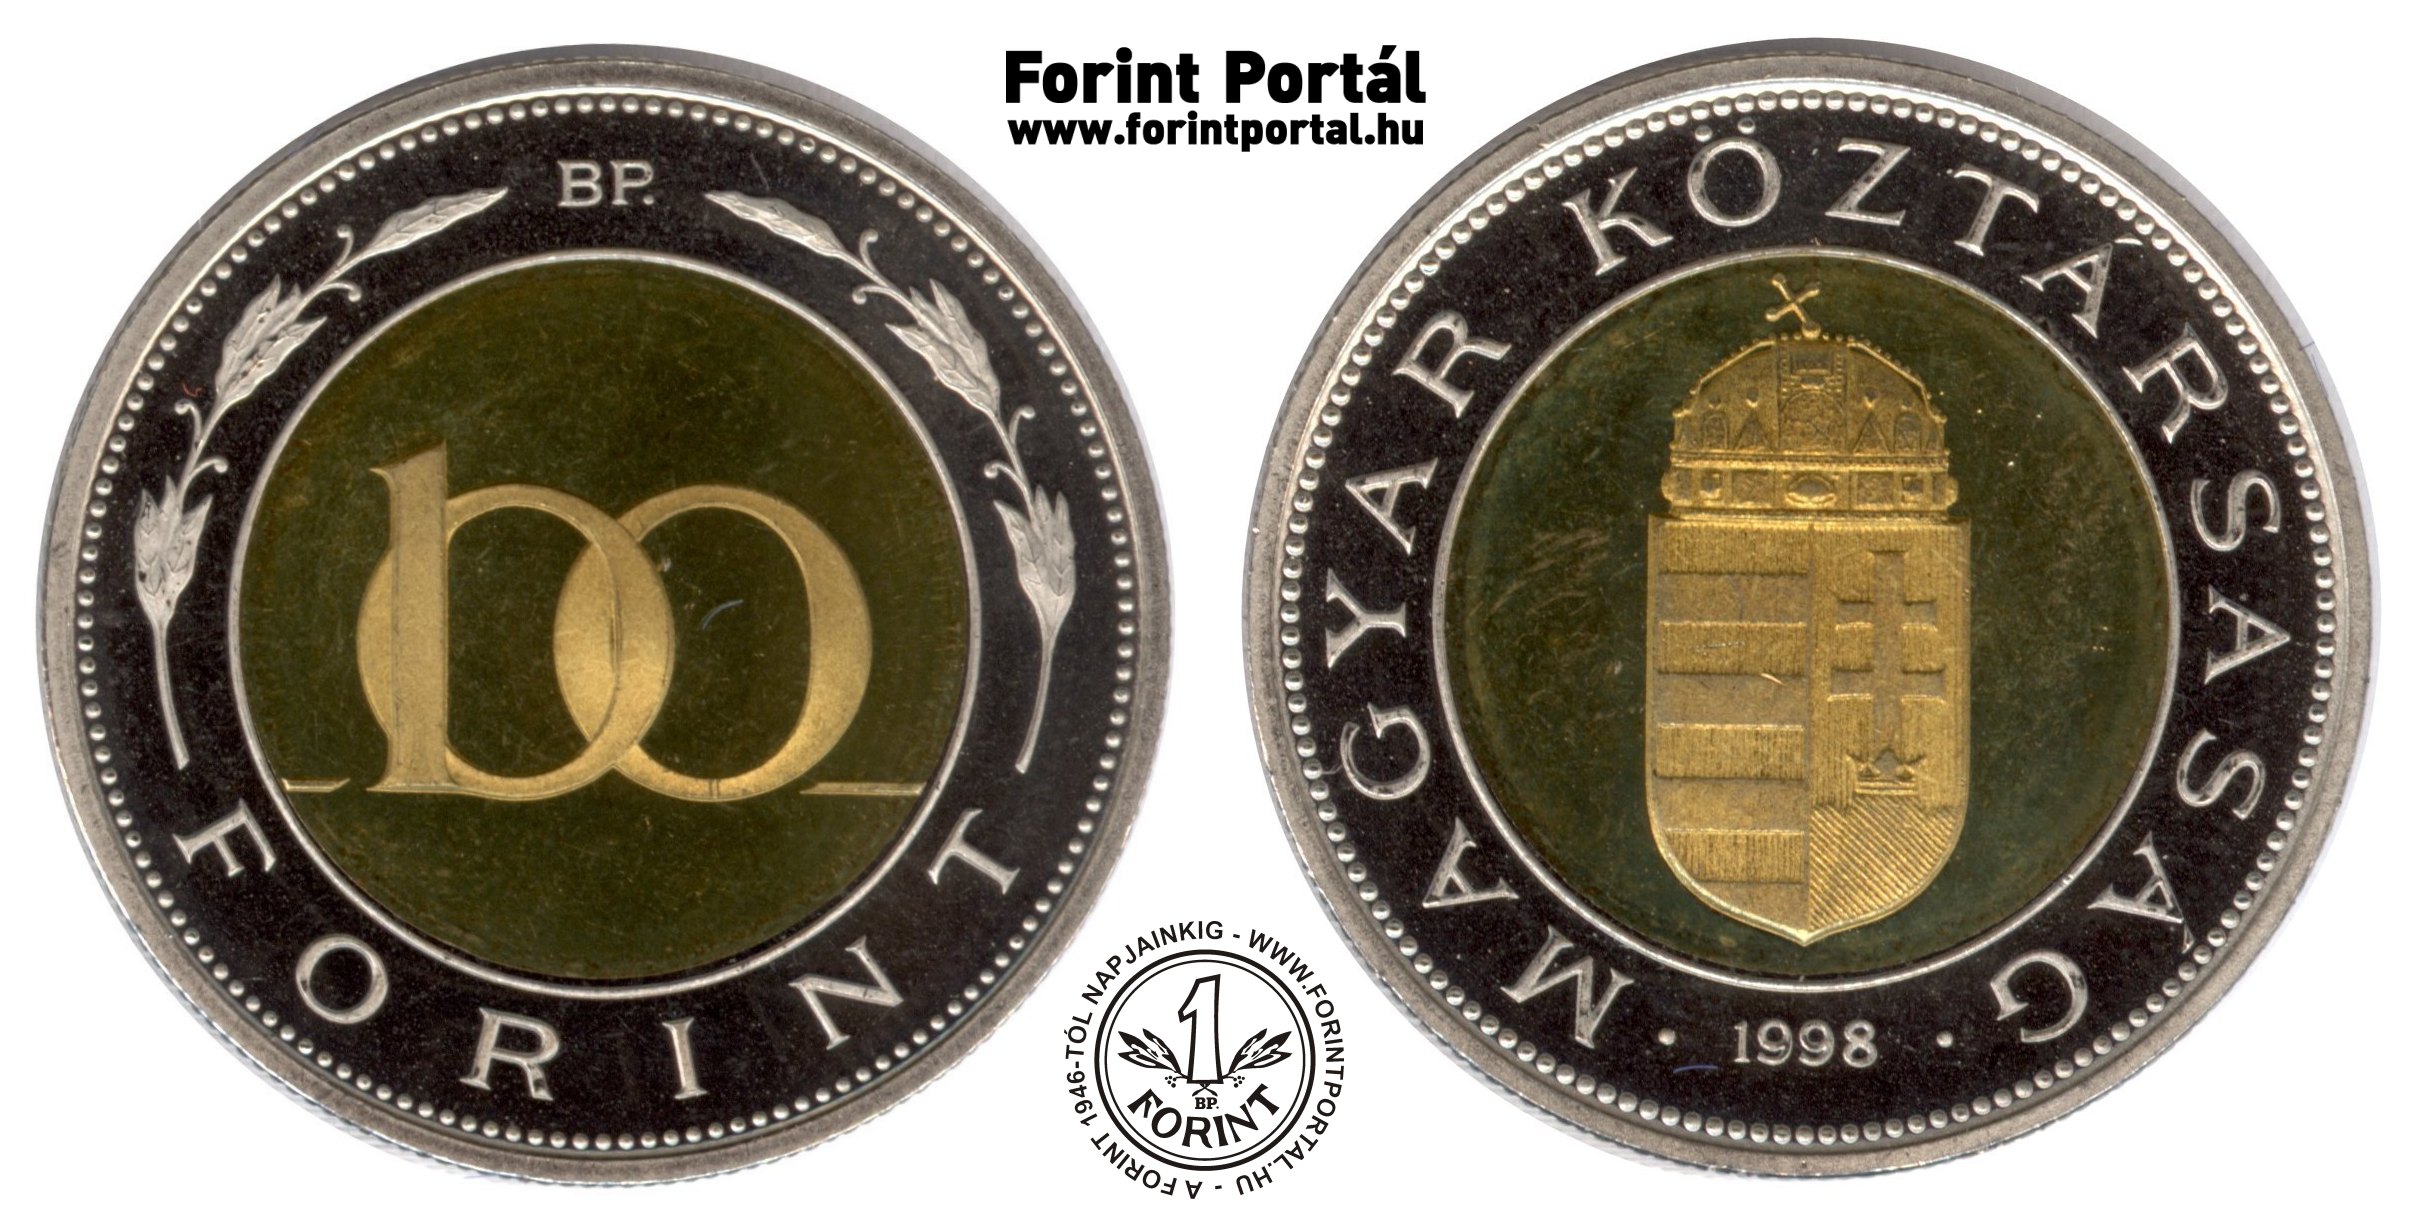 1998-as 100 forint (Bi-metál) - Forint Portál Numizmatika - A Forint